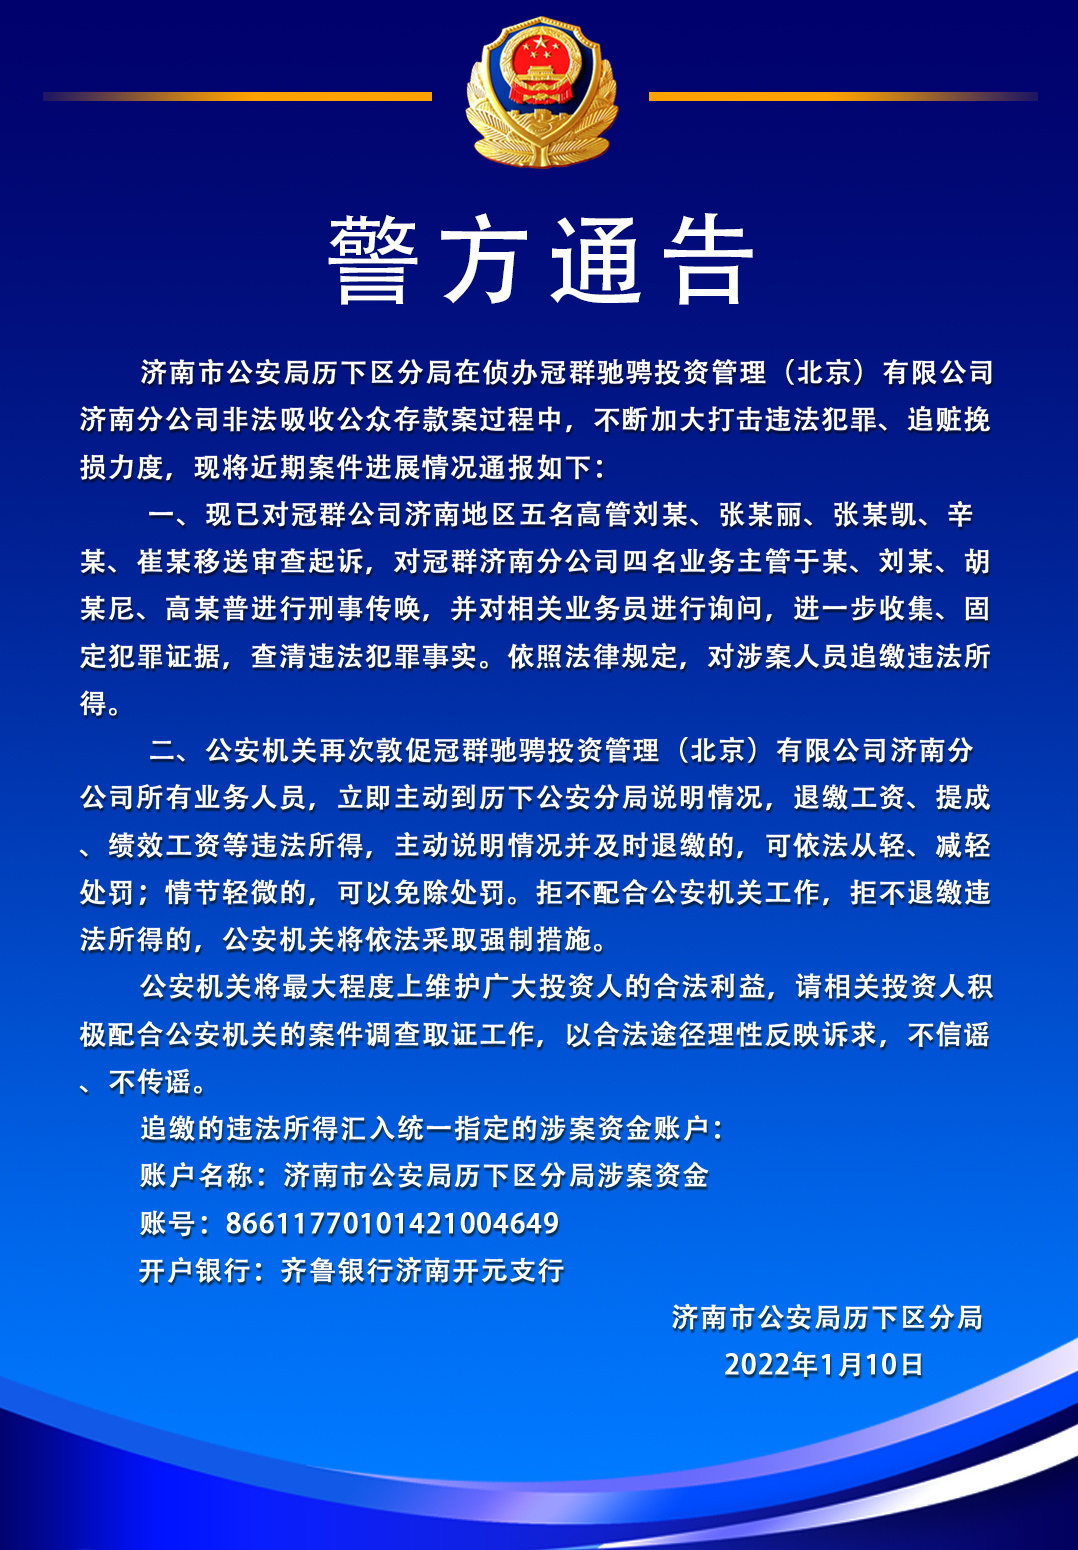 北京“冠群驰骋”非吸案有新动态 五名高管已被移送起诉